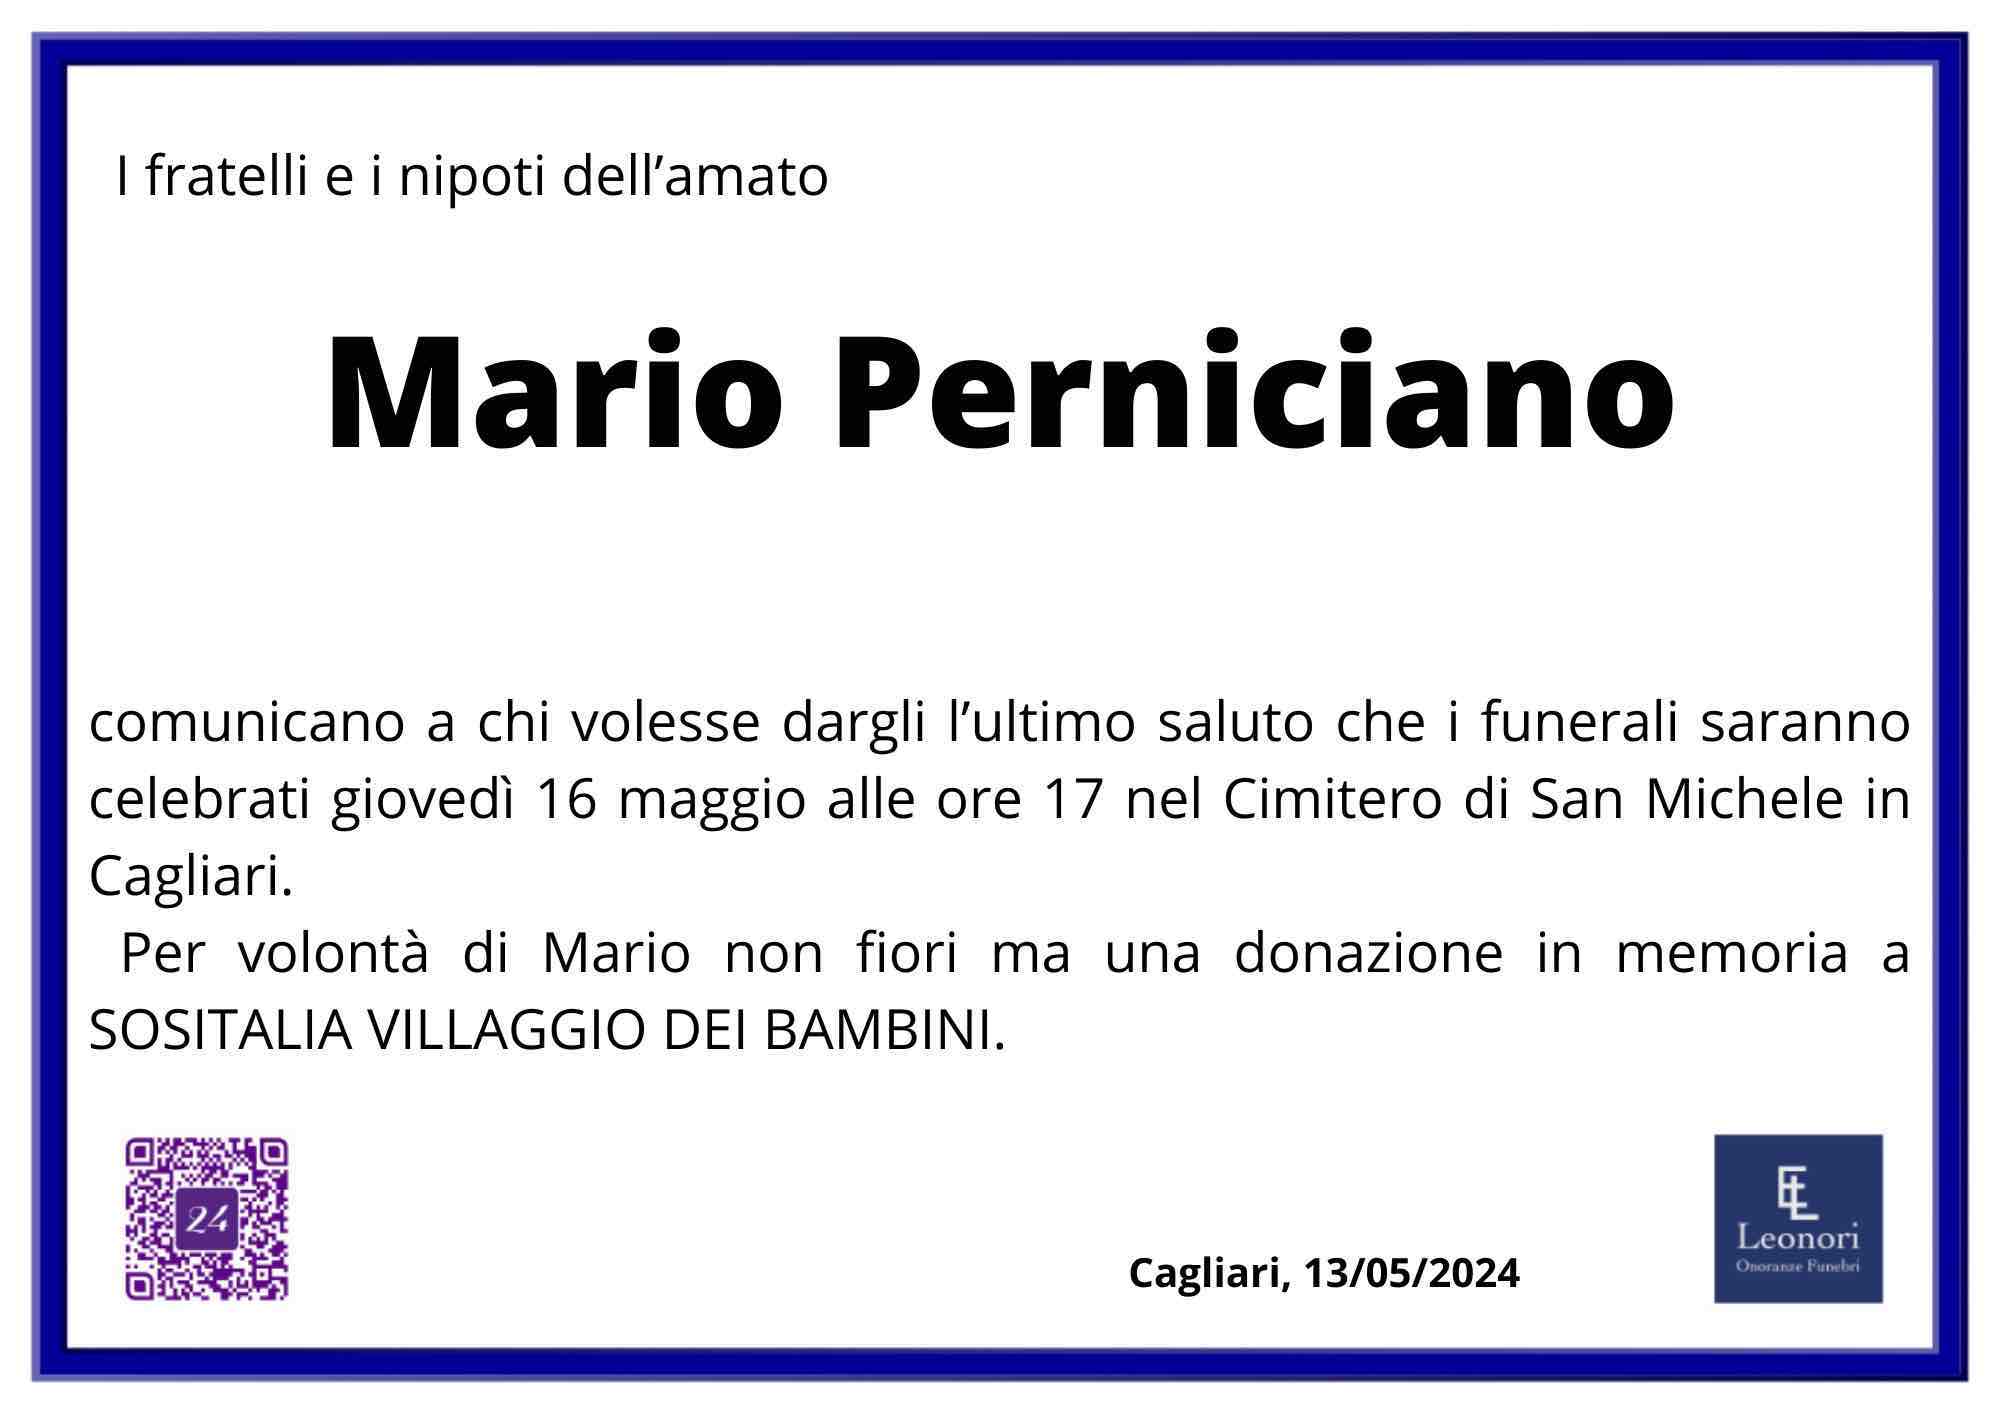 Mario Perniciano